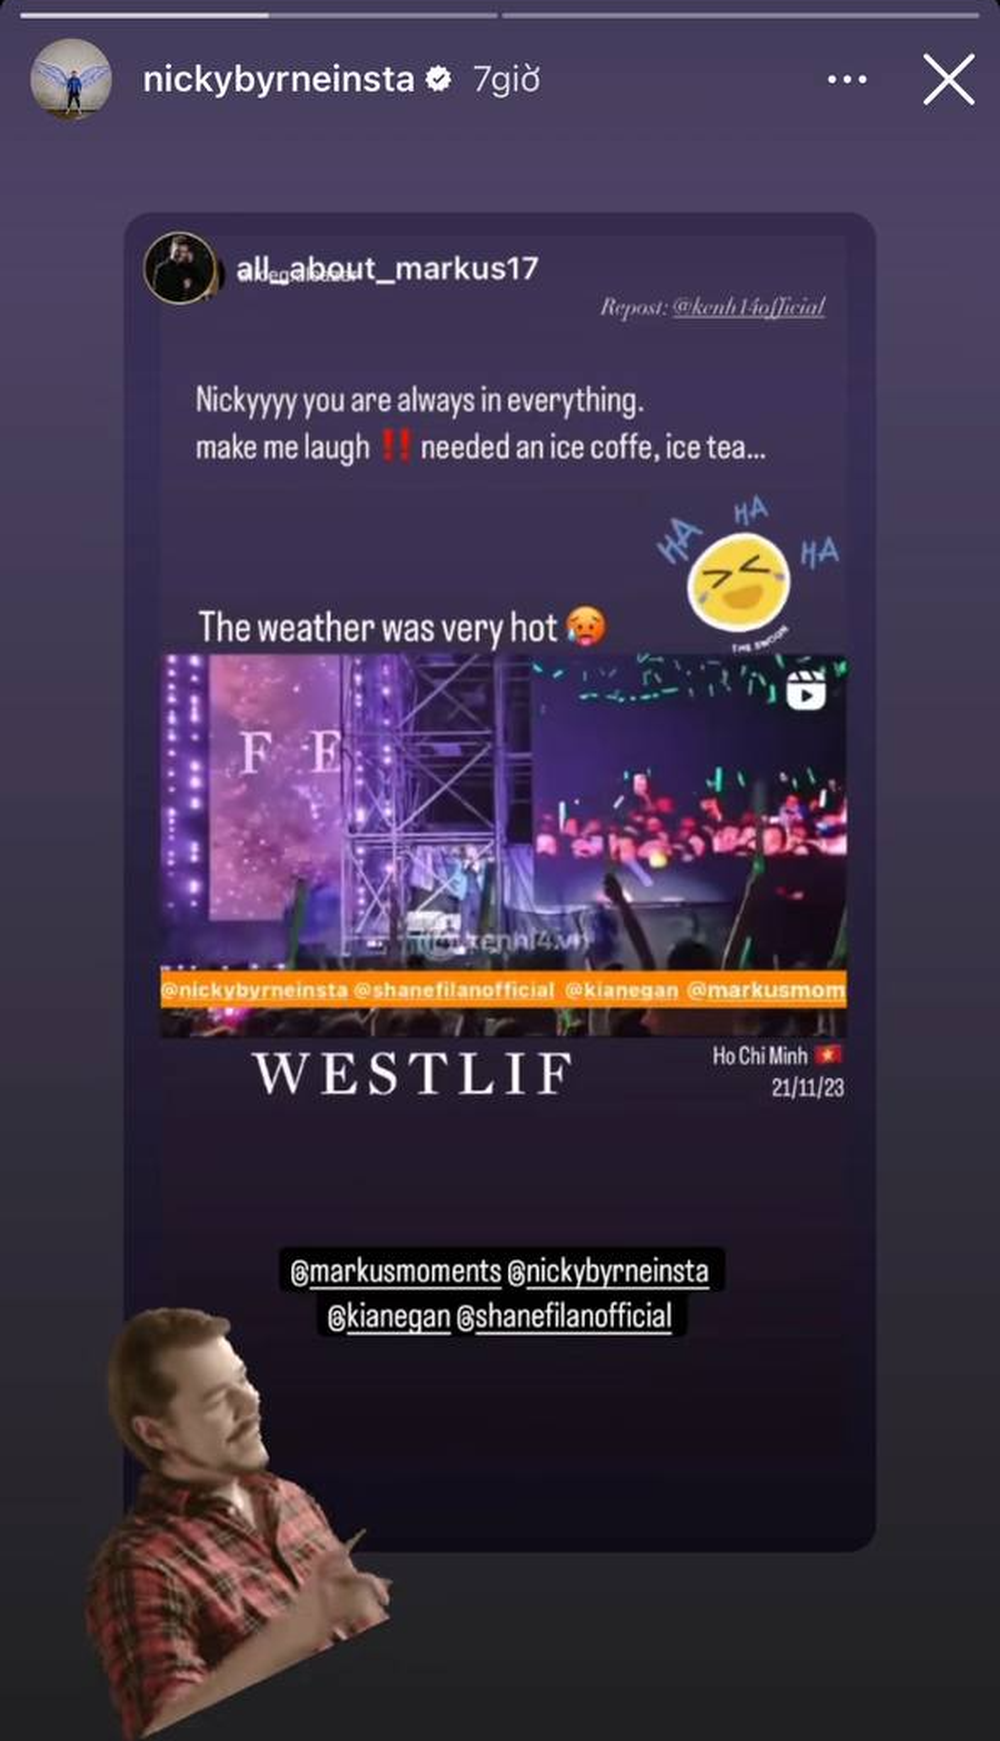 Westlife xả ảnh 2 đêm concert hoành tráng: Khoảnh khắc lá cờ Việt Nam - Ireland bên nhau khiến fan nức lòng! - Ảnh 3.